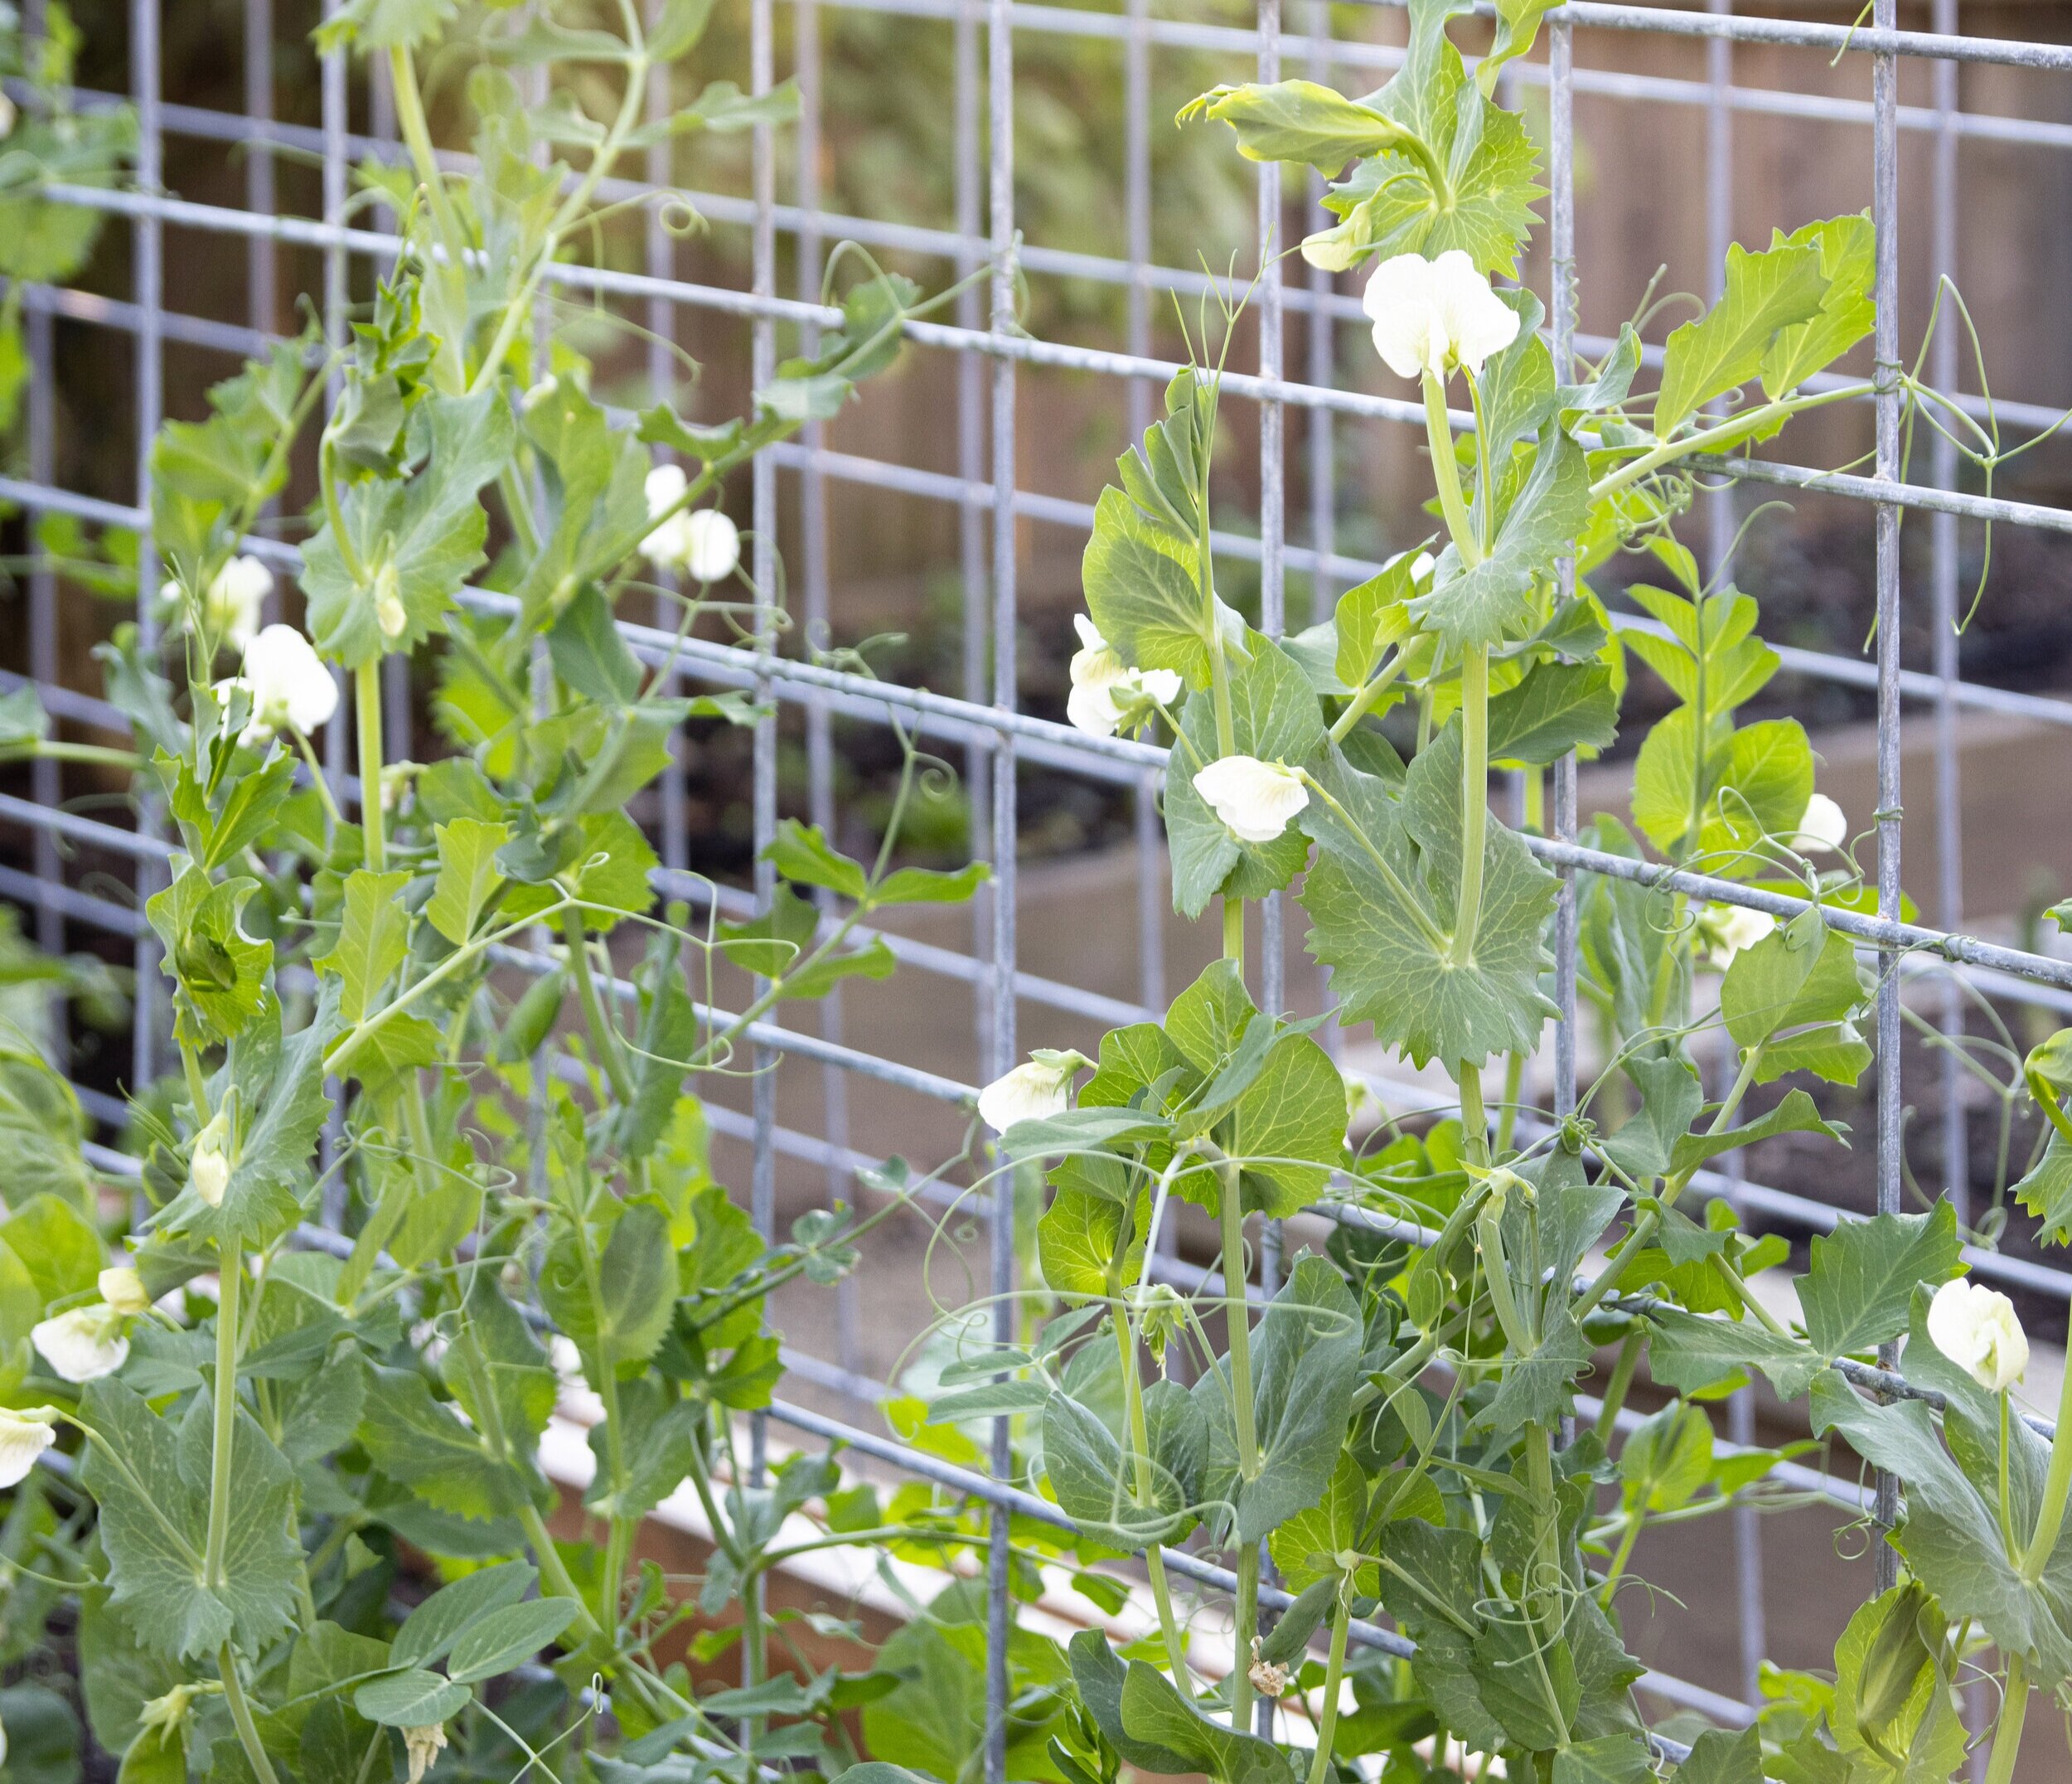 甜豌豆添加美丽,令人难以置信的气味,和新鲜农产品食用后院。图片由@urbanfarmstead。